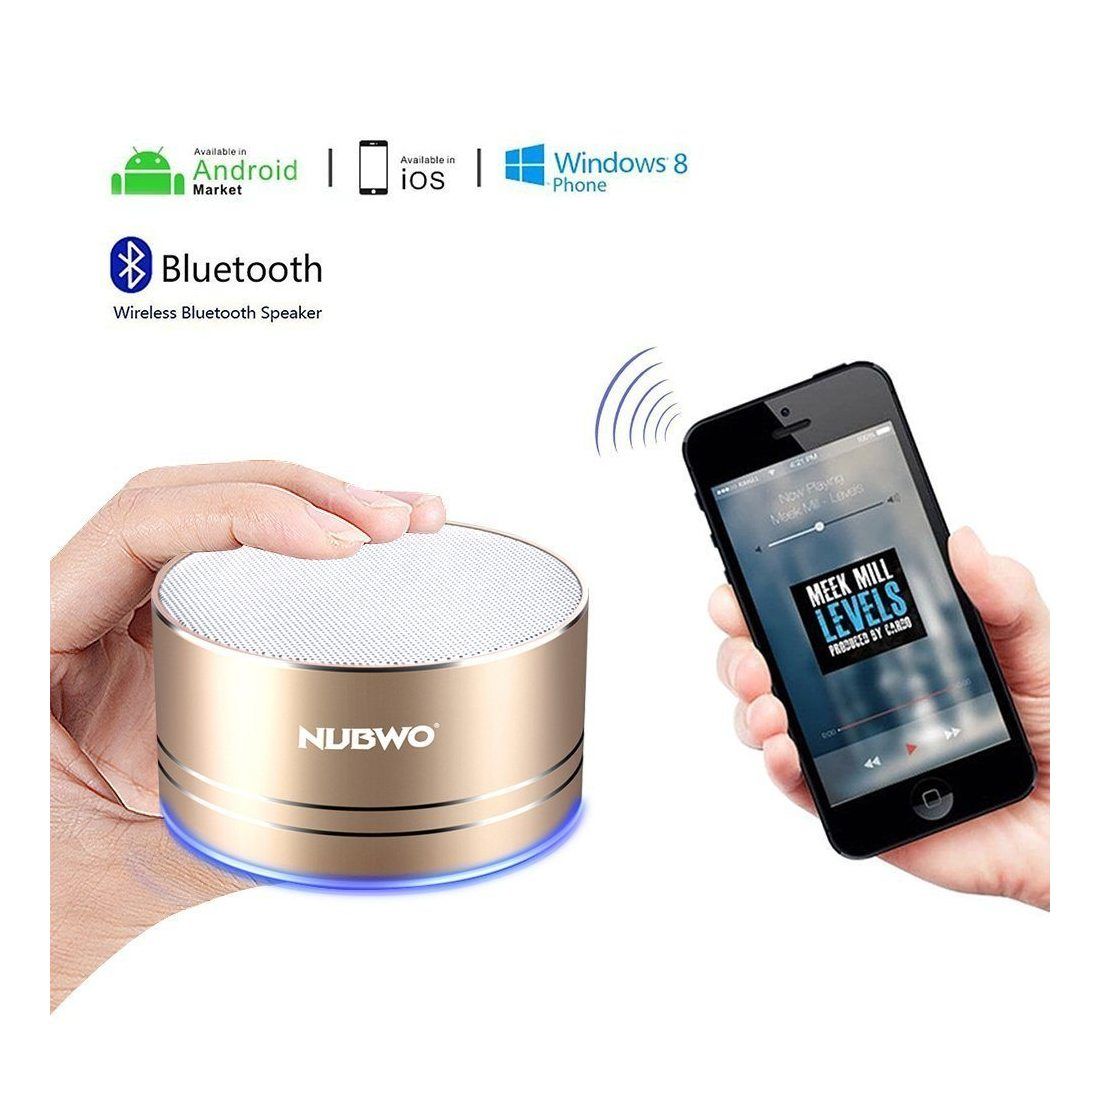 Enceinte Bluetooth, Nubwo Mini Haut-parleur de Voyage Portable Sans Fil,5 heures de Lecture,Microphone Intégré,Appel Mains-Li